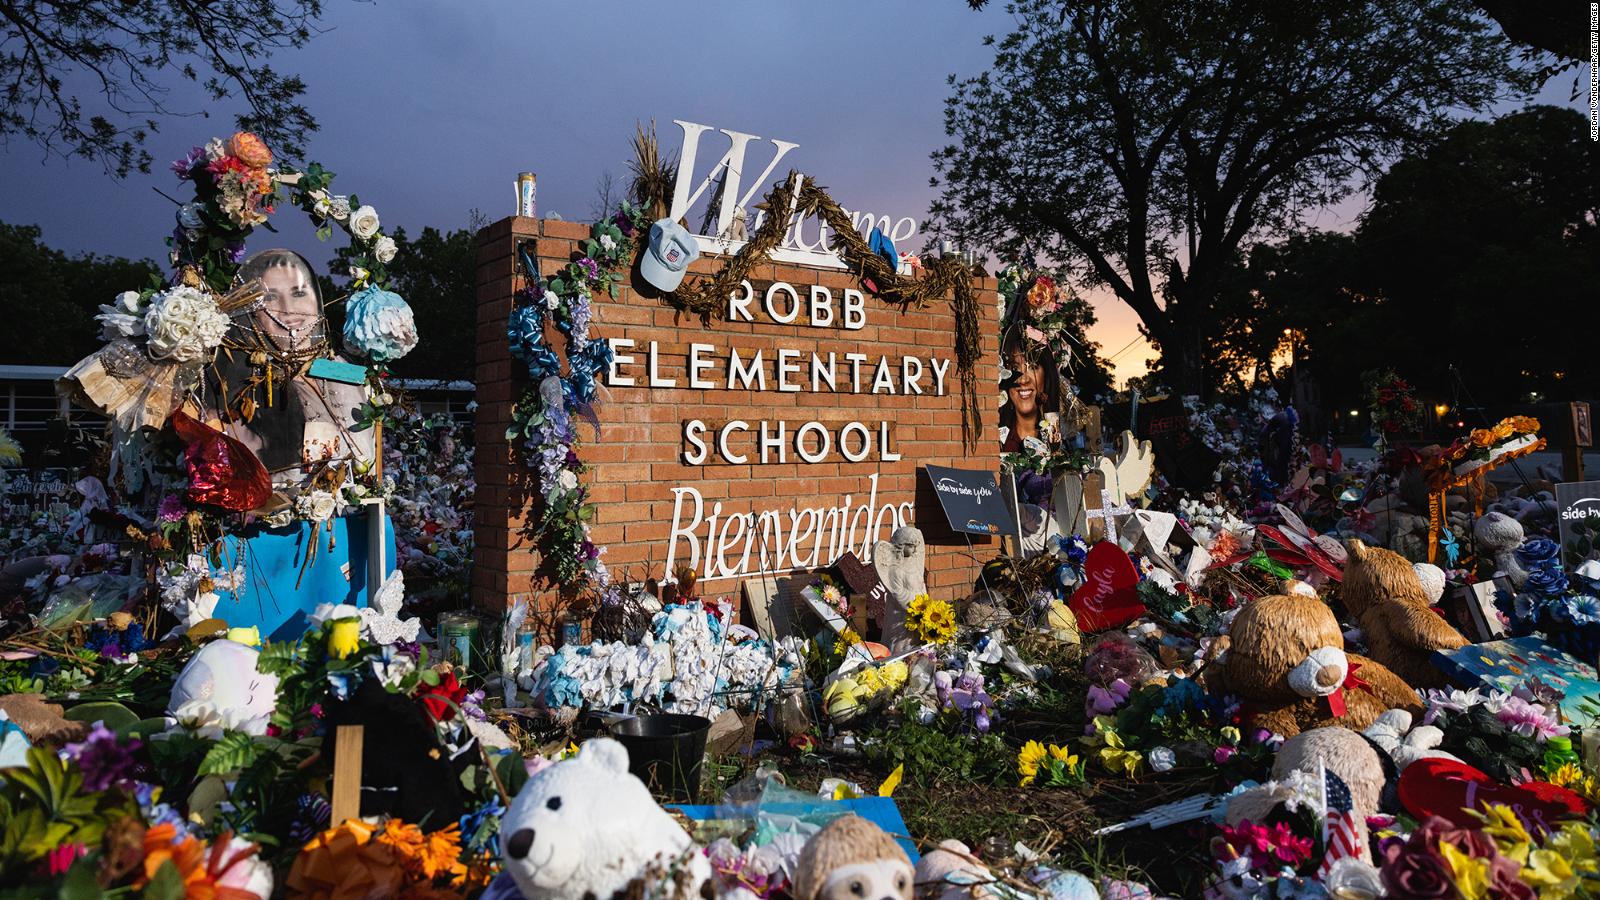 Asignan jurado investigador para evaluar la respuesta a la masacre en escuela de Uvalde, Texas, reporta periódico local